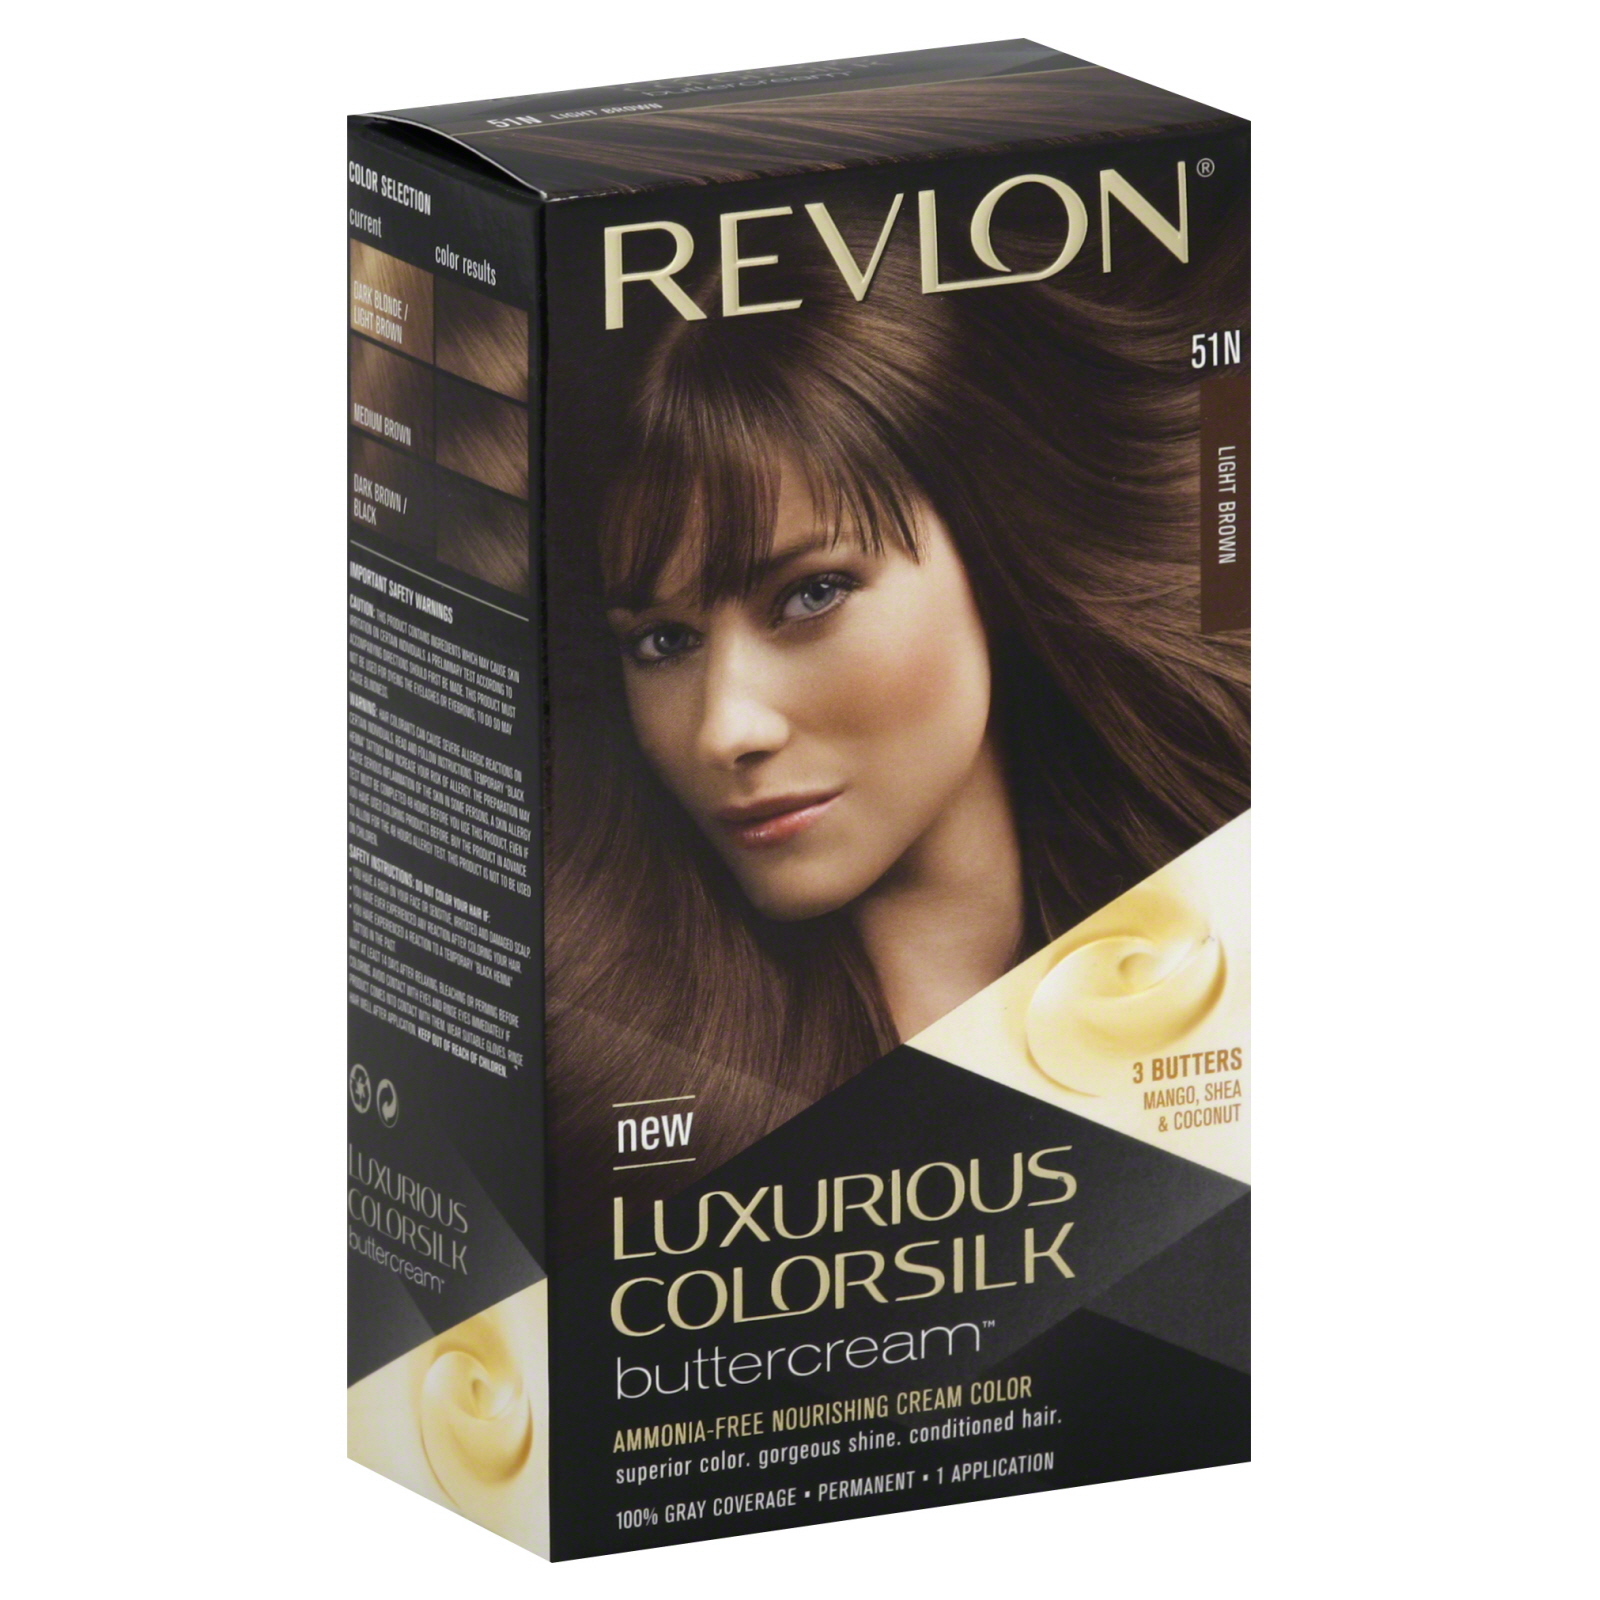 Revlon Luxurious Colorsilk Buttercream Permanent Color, Light Brown